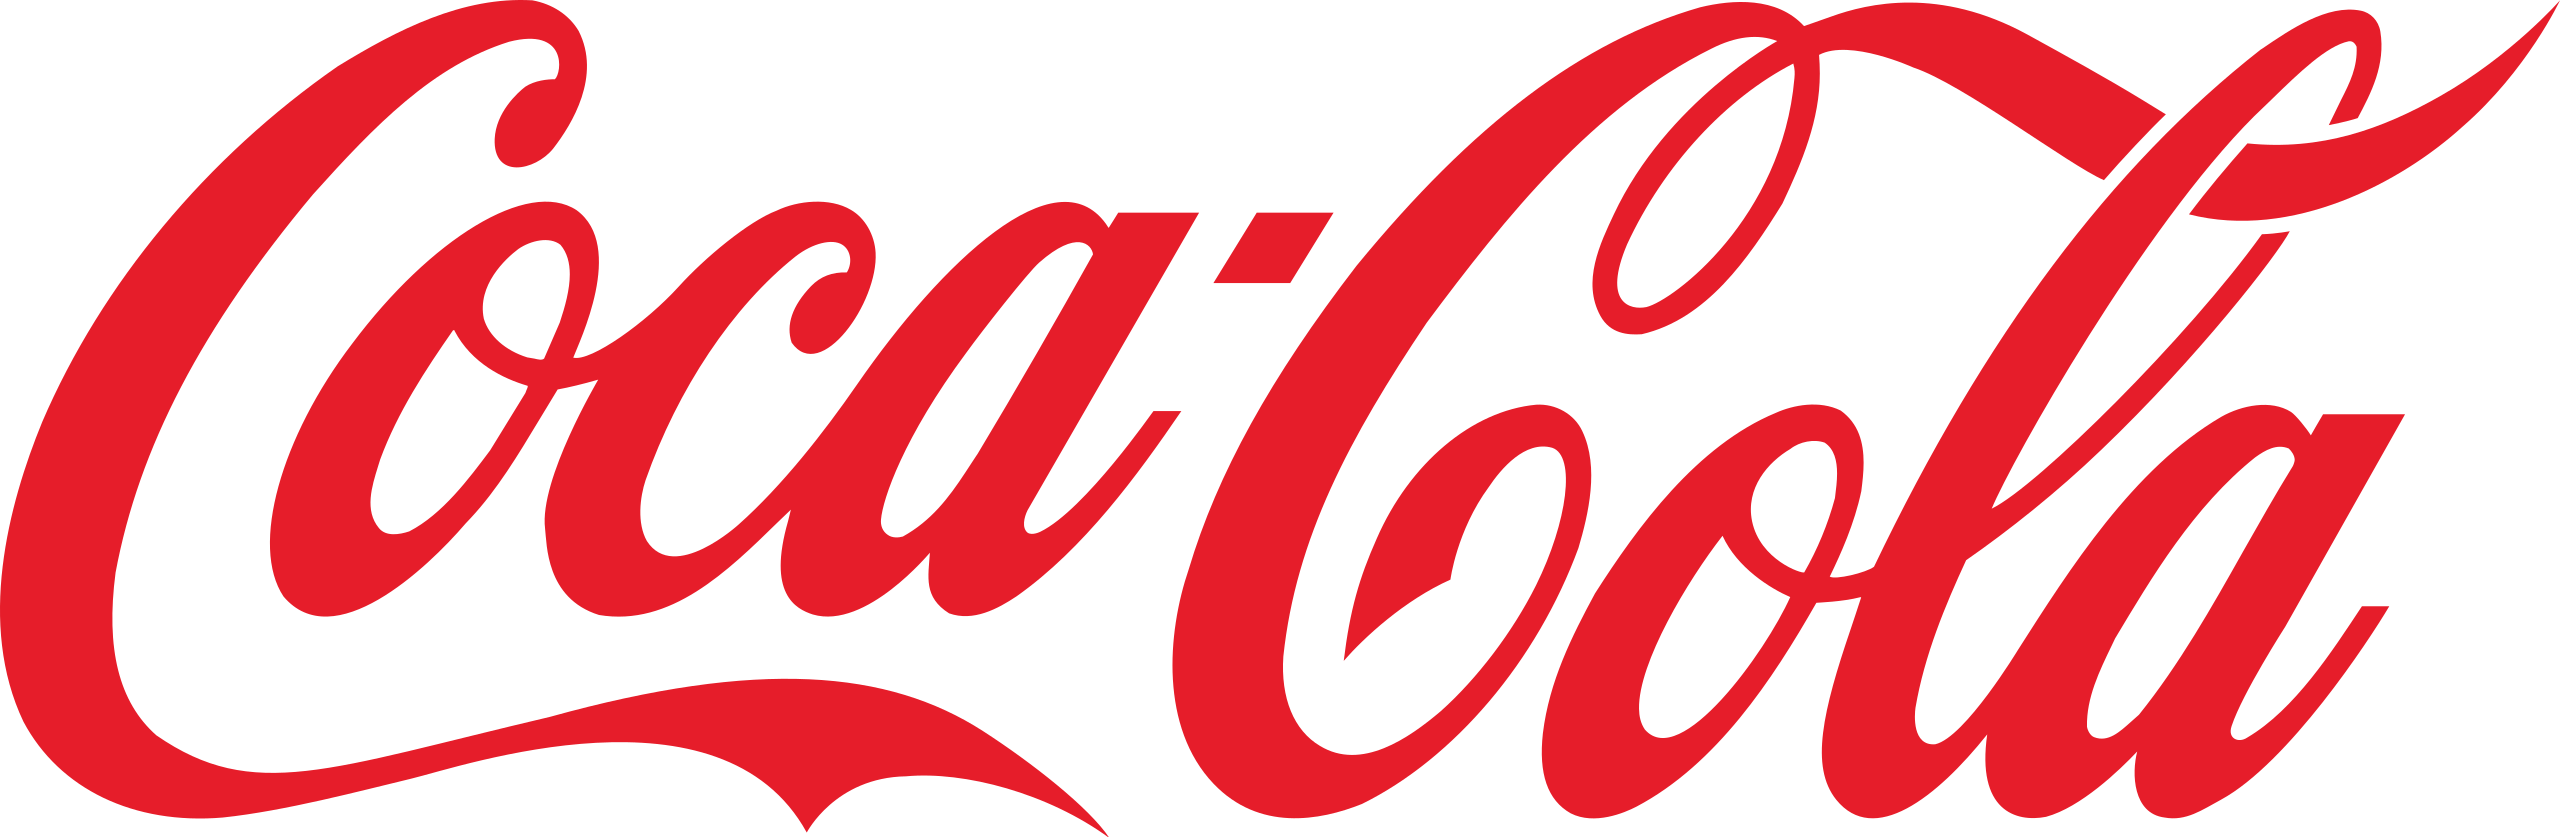 Coca-Cola_logo.svg_.png